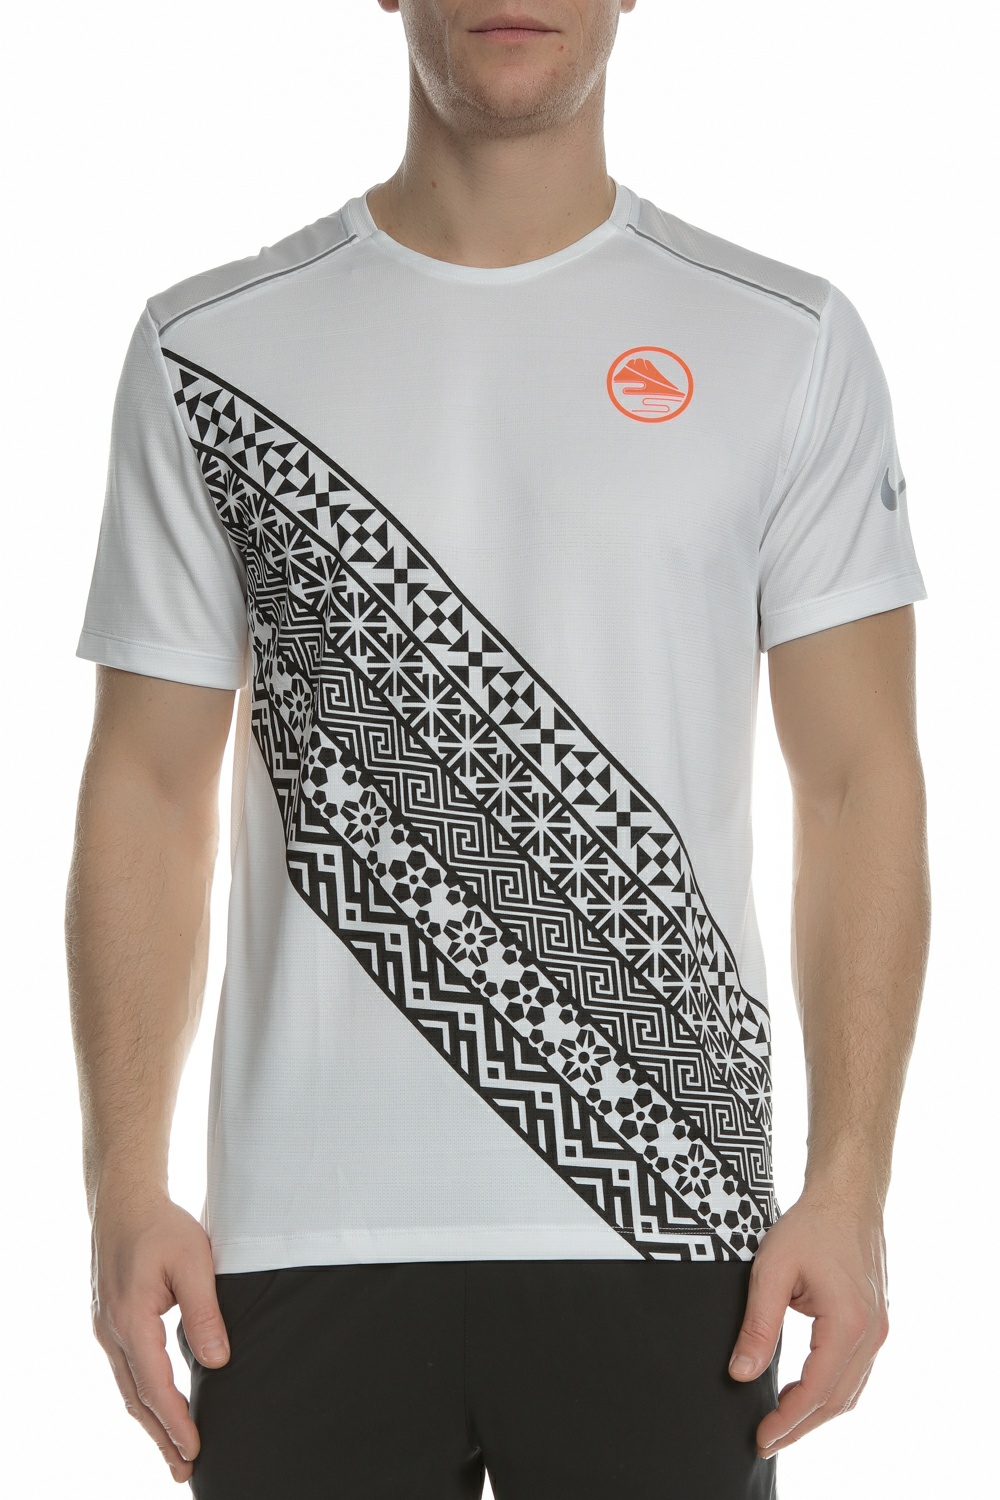 Ανδρικά/Ρούχα/Αθλητικά/T-shirt NIKE - Ανδρική μπλούζα για τρέξιμο NIKE DF MILER λευκή